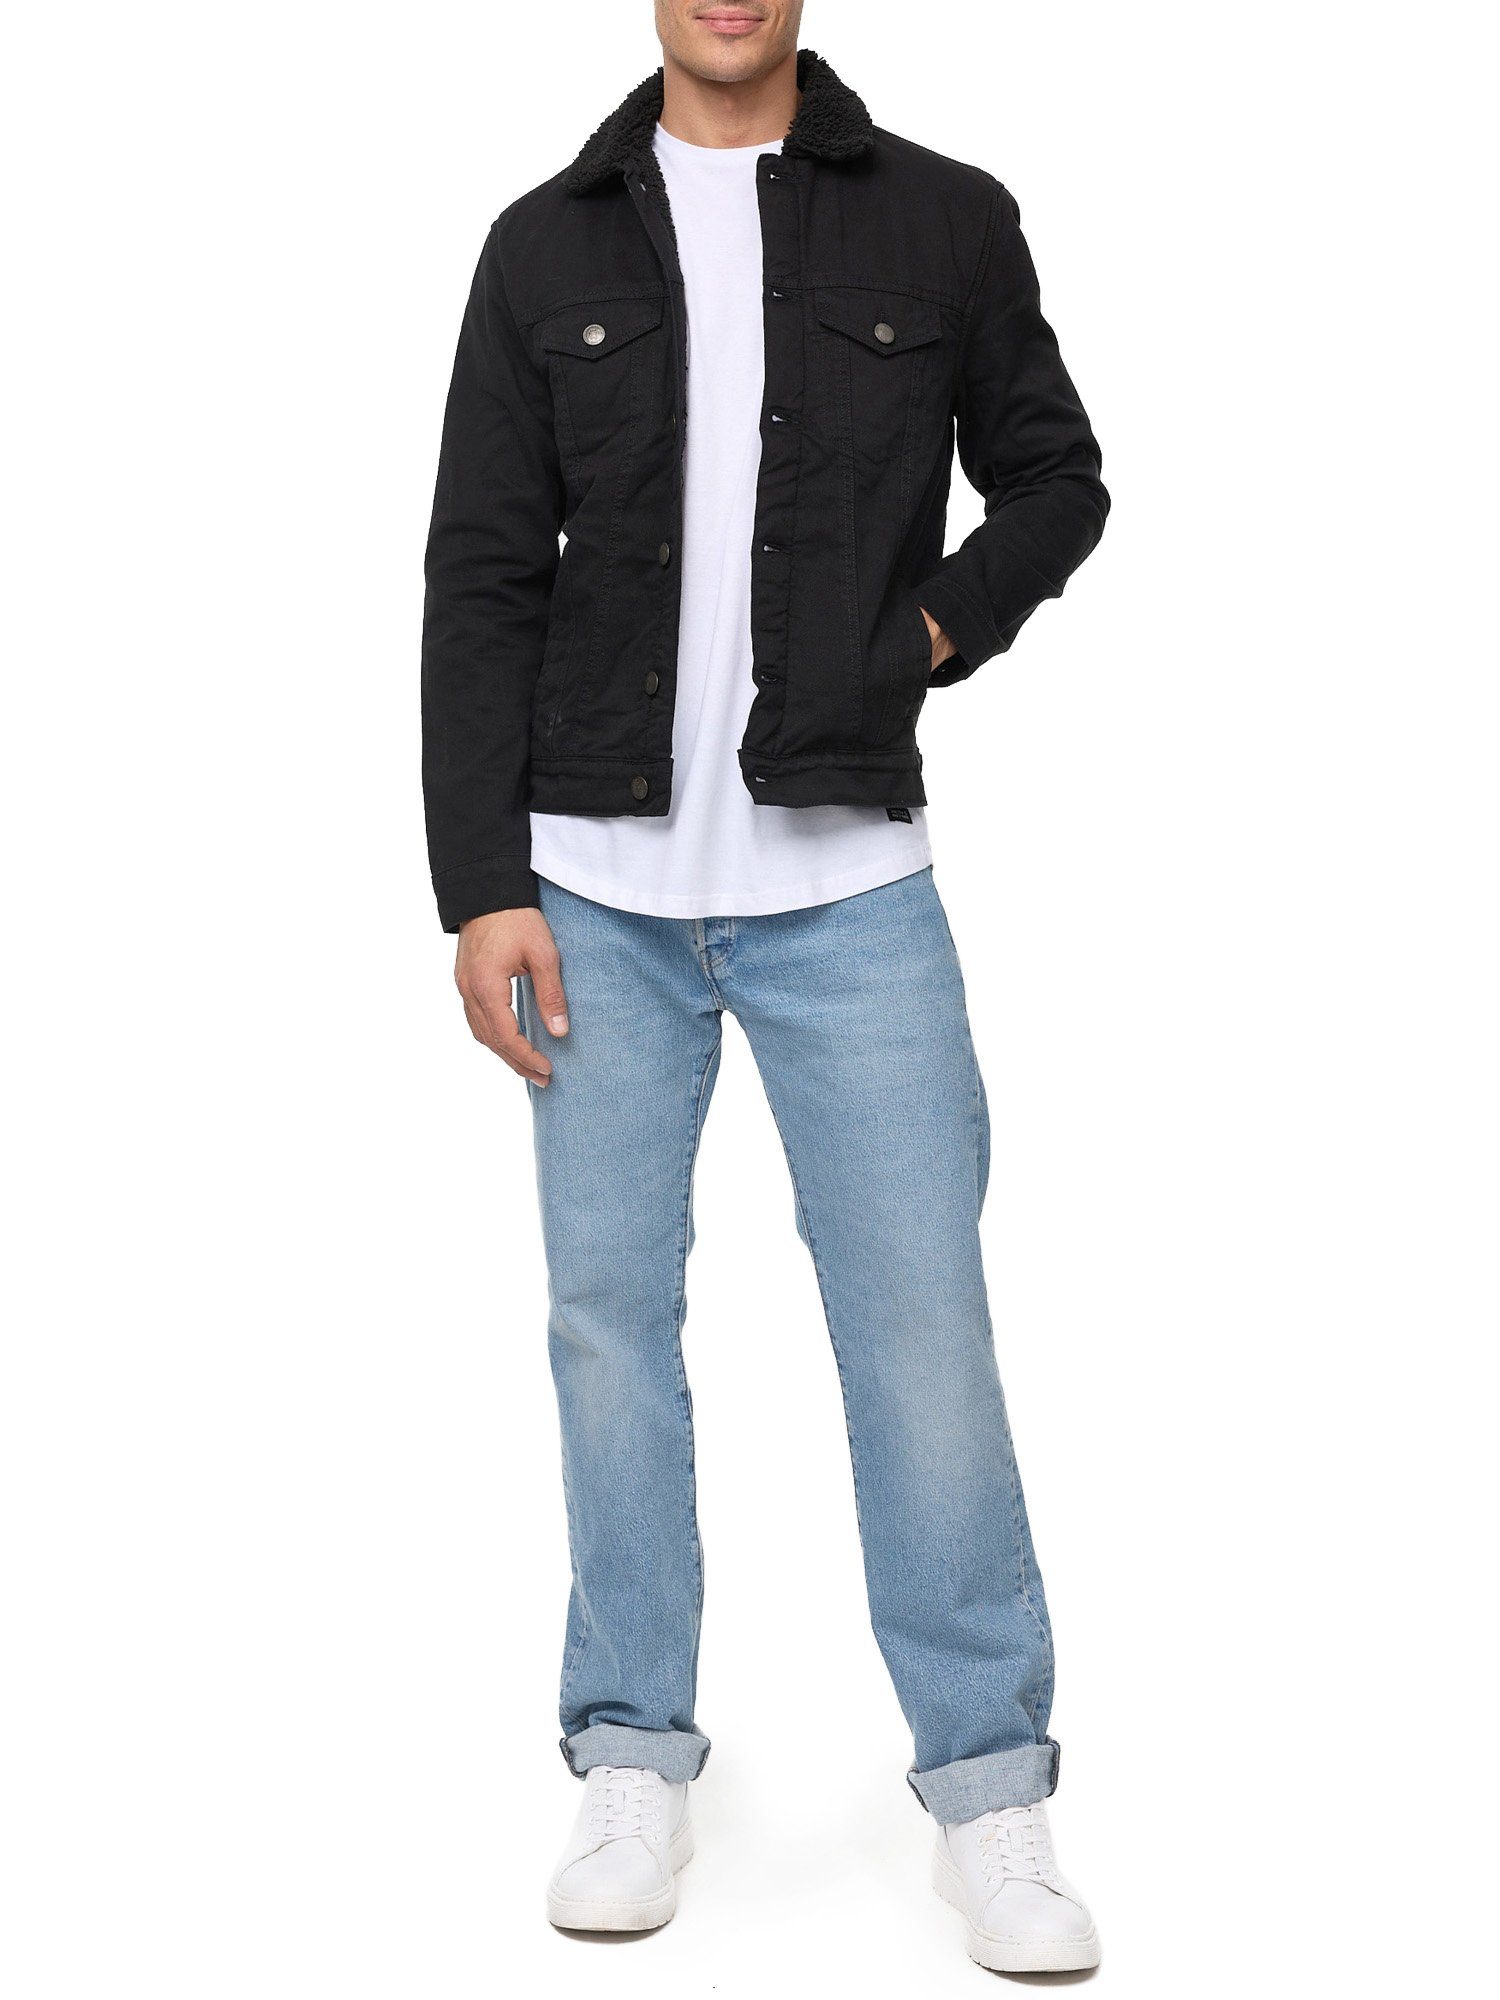 Tazzio Jacke Fellkragen schwarz Jeansjacke A400 mit Jeans